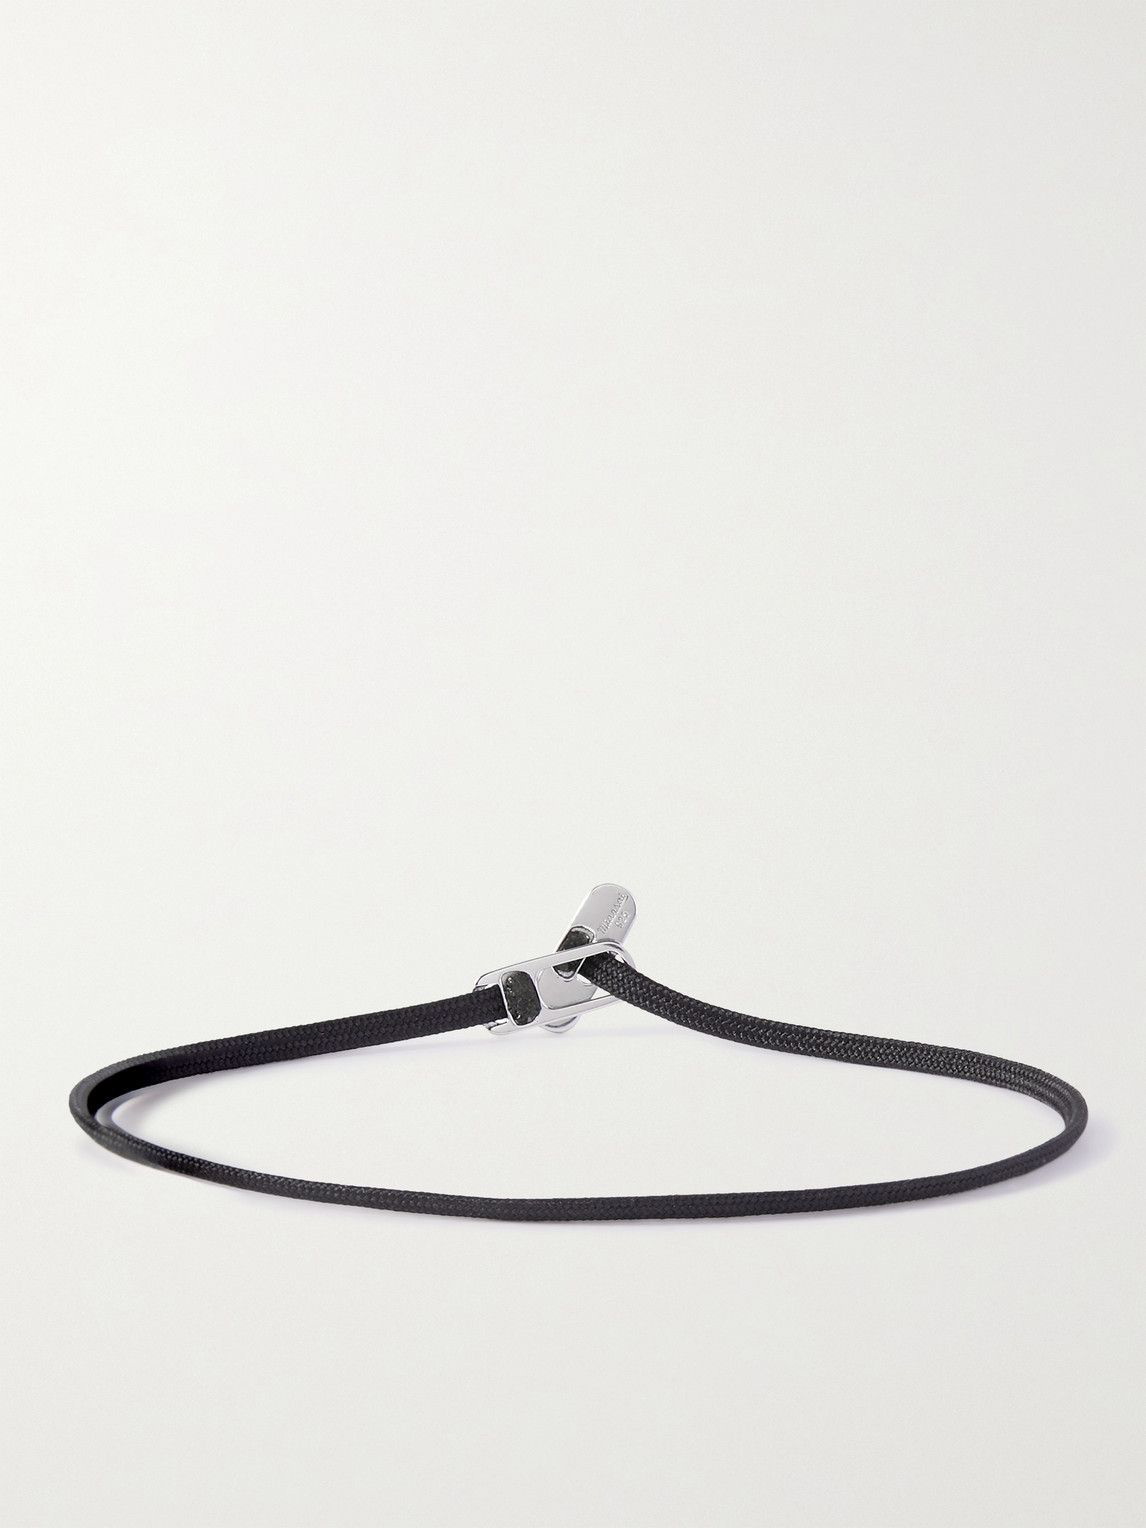 Miansai Men's Metric Chain Bracelet